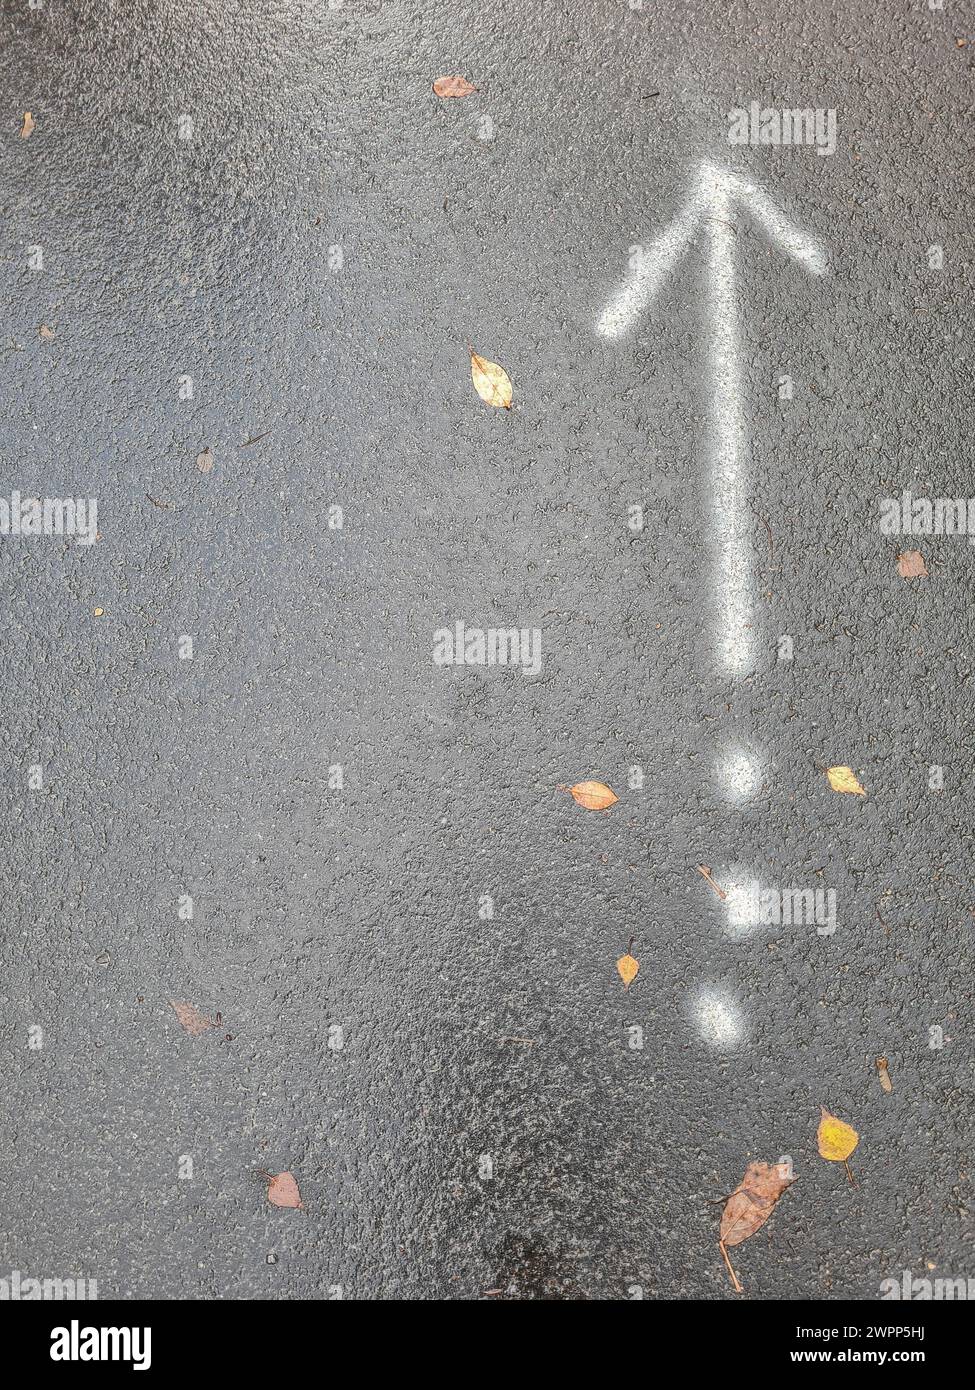 Flecha blanca apuntando hacia arriba y tres puntos blancos en tierra asfáltica gris en la lluvia, carretera empapada de lluvia con señal, Alemania Foto de stock